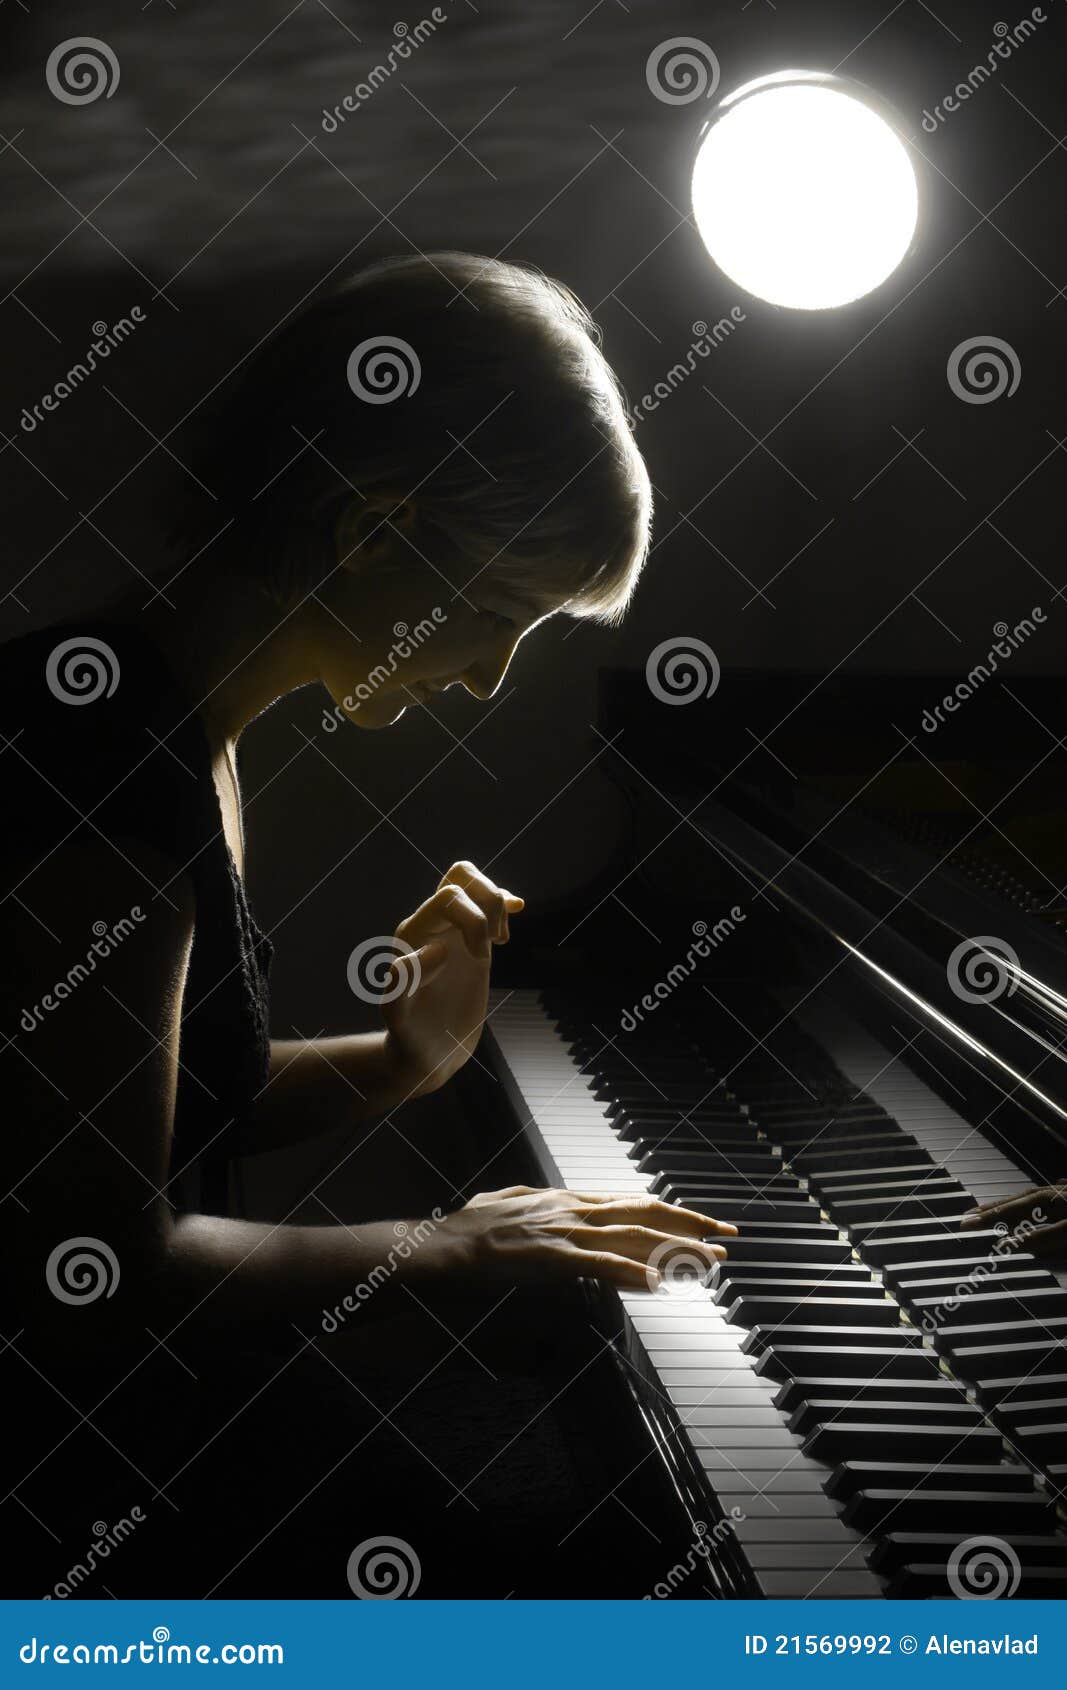 piano musician pianist